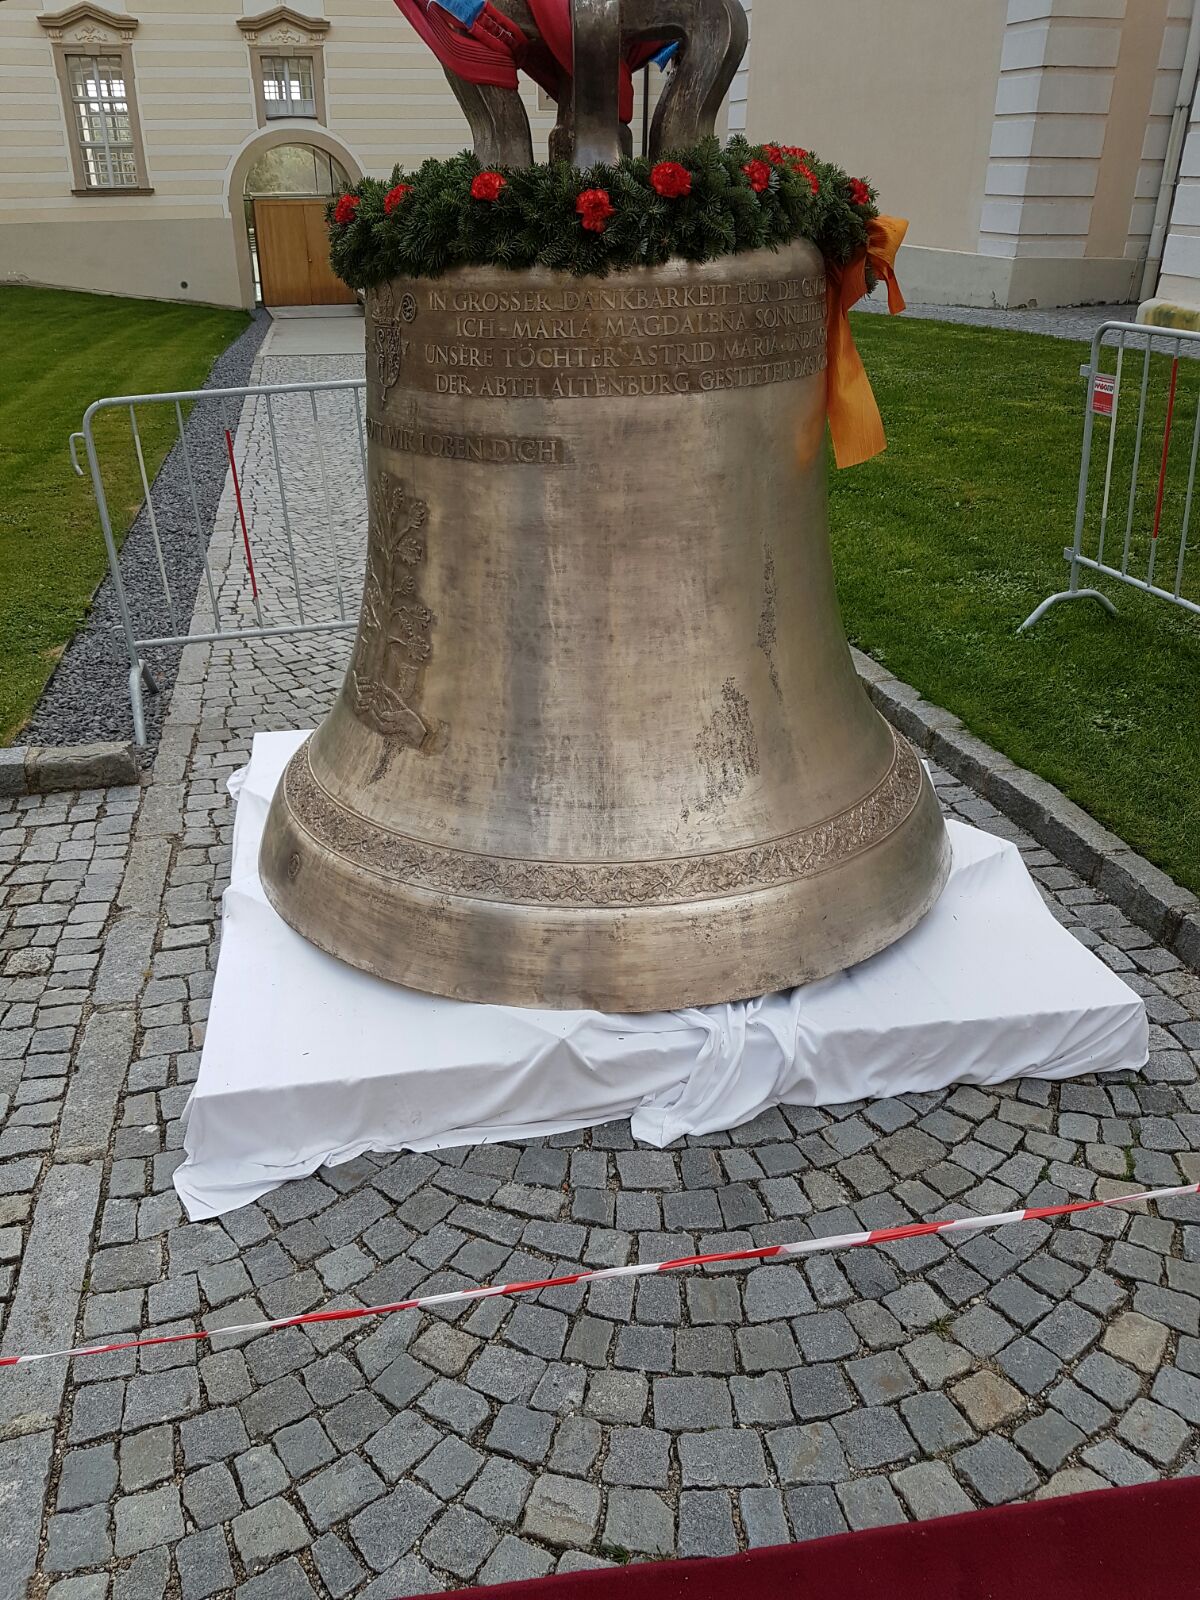 Consécration de la cloche à Abbaye dAltenburg